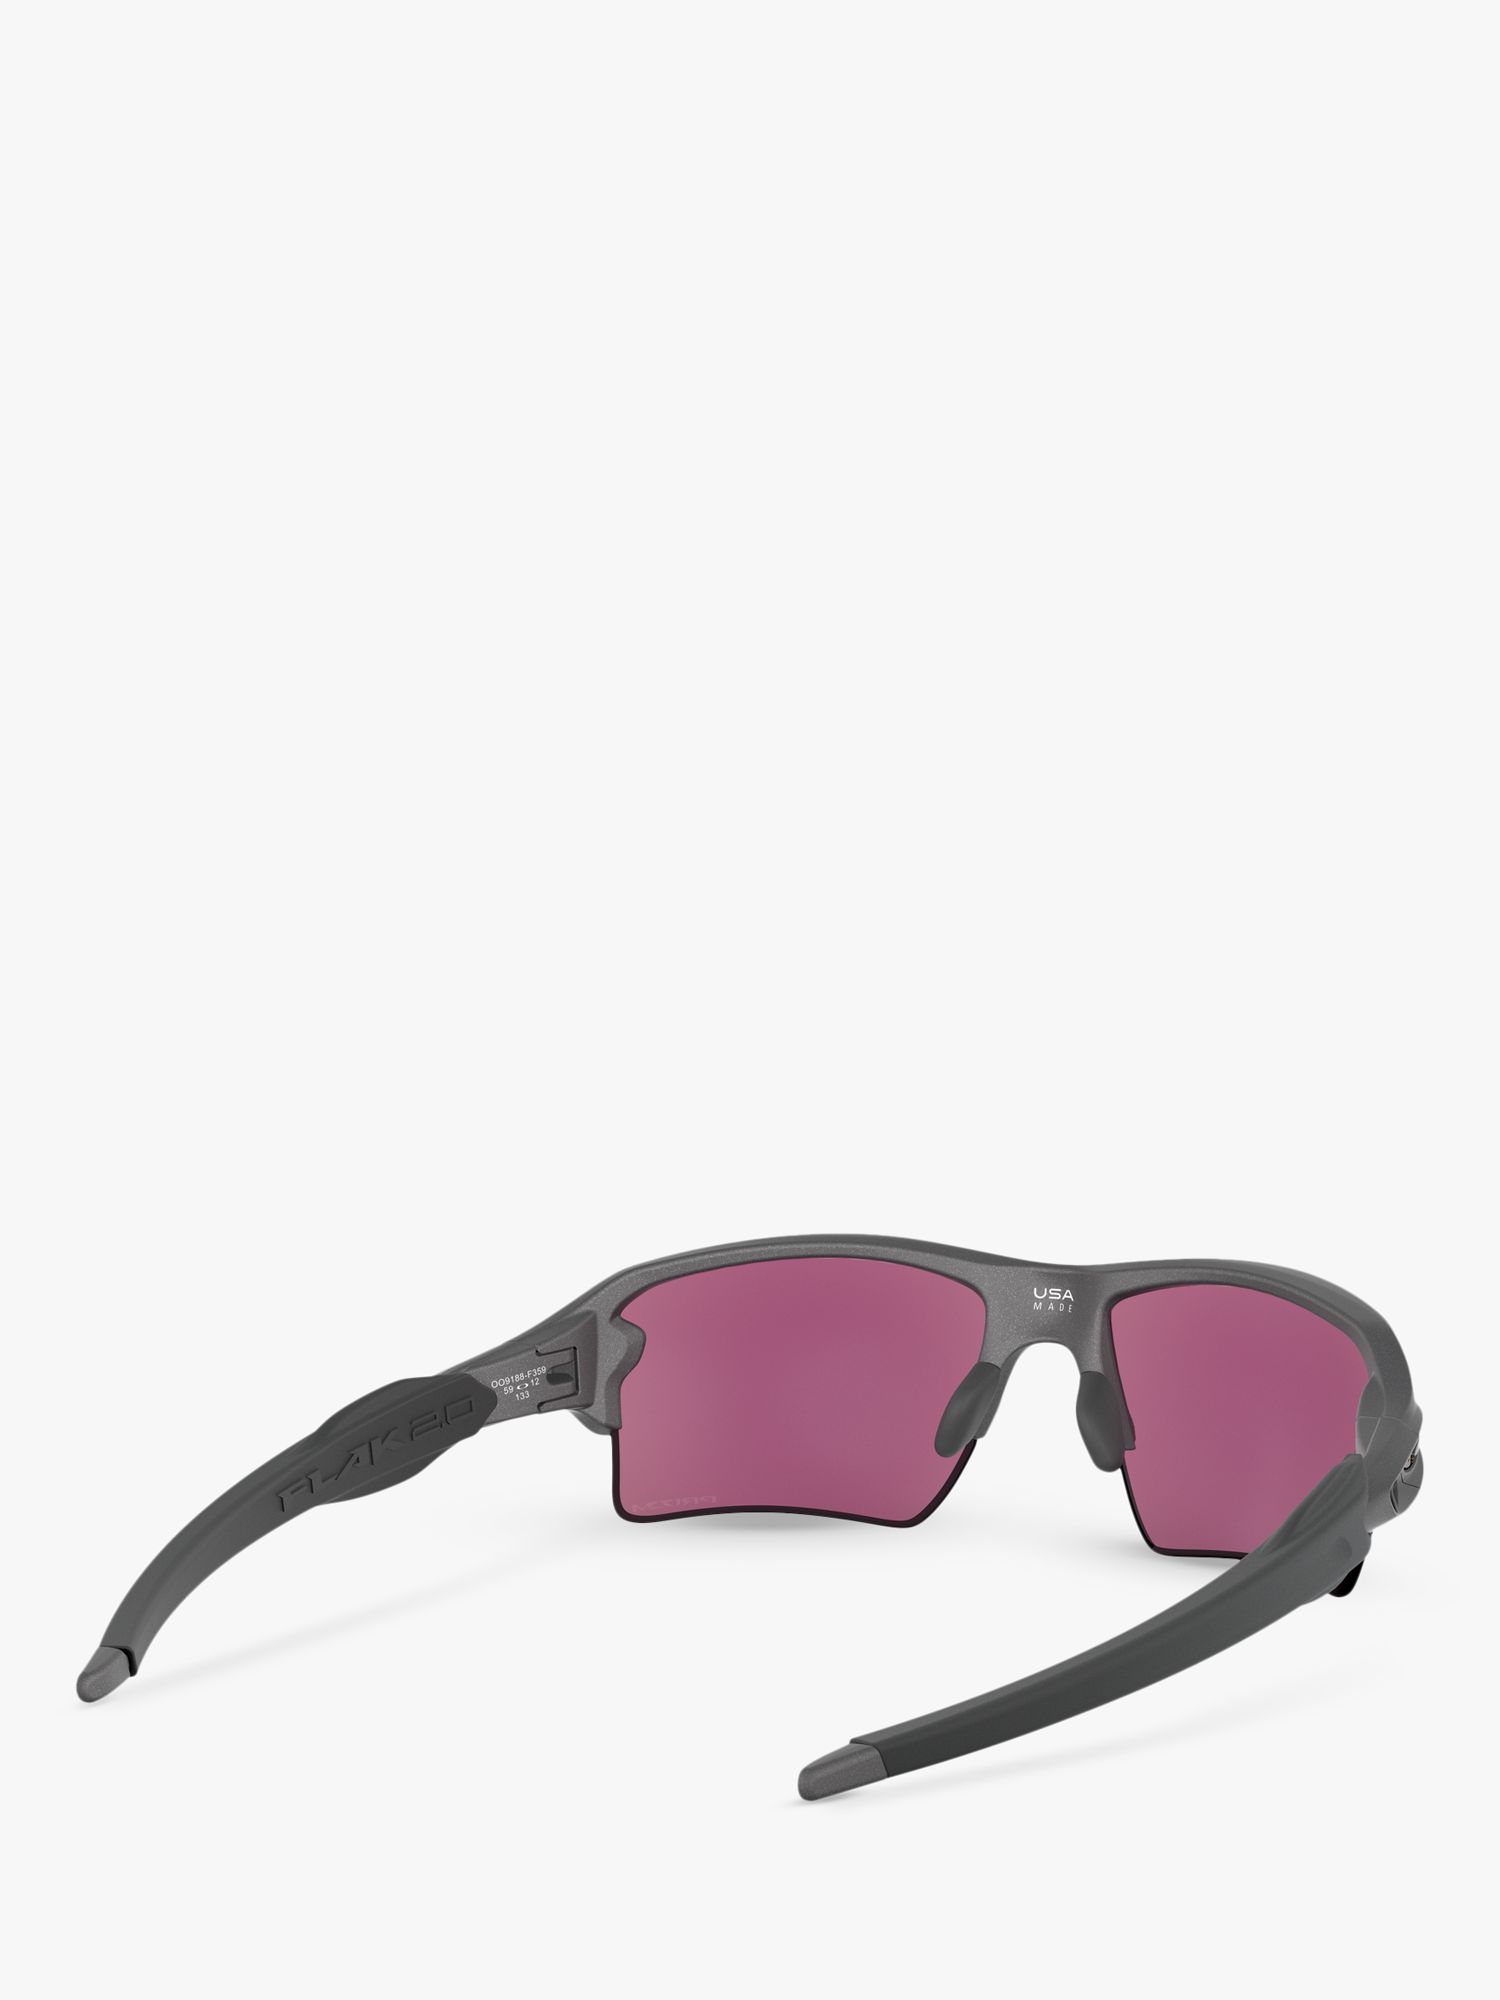 [OO9188-A6] Mens Oakley FLAK 2.0 XL St Louis Cardinals Sunglasses